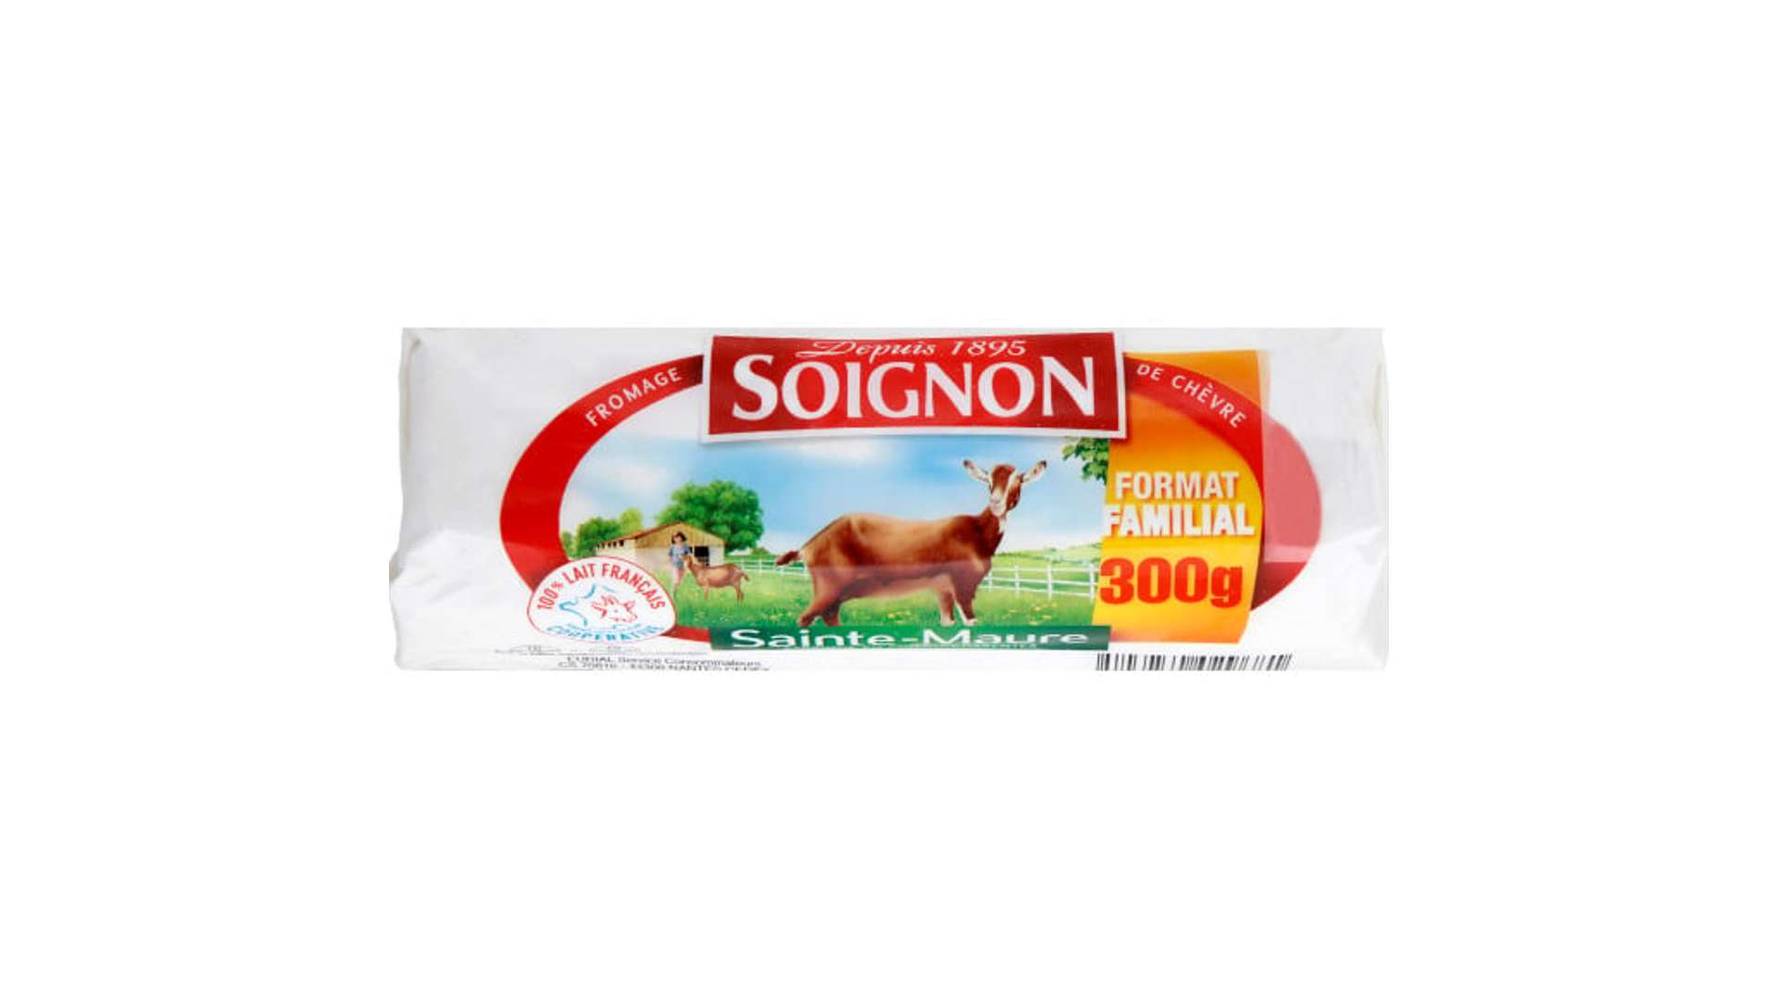 Soignon - Sainte-maure bûche de chèvre